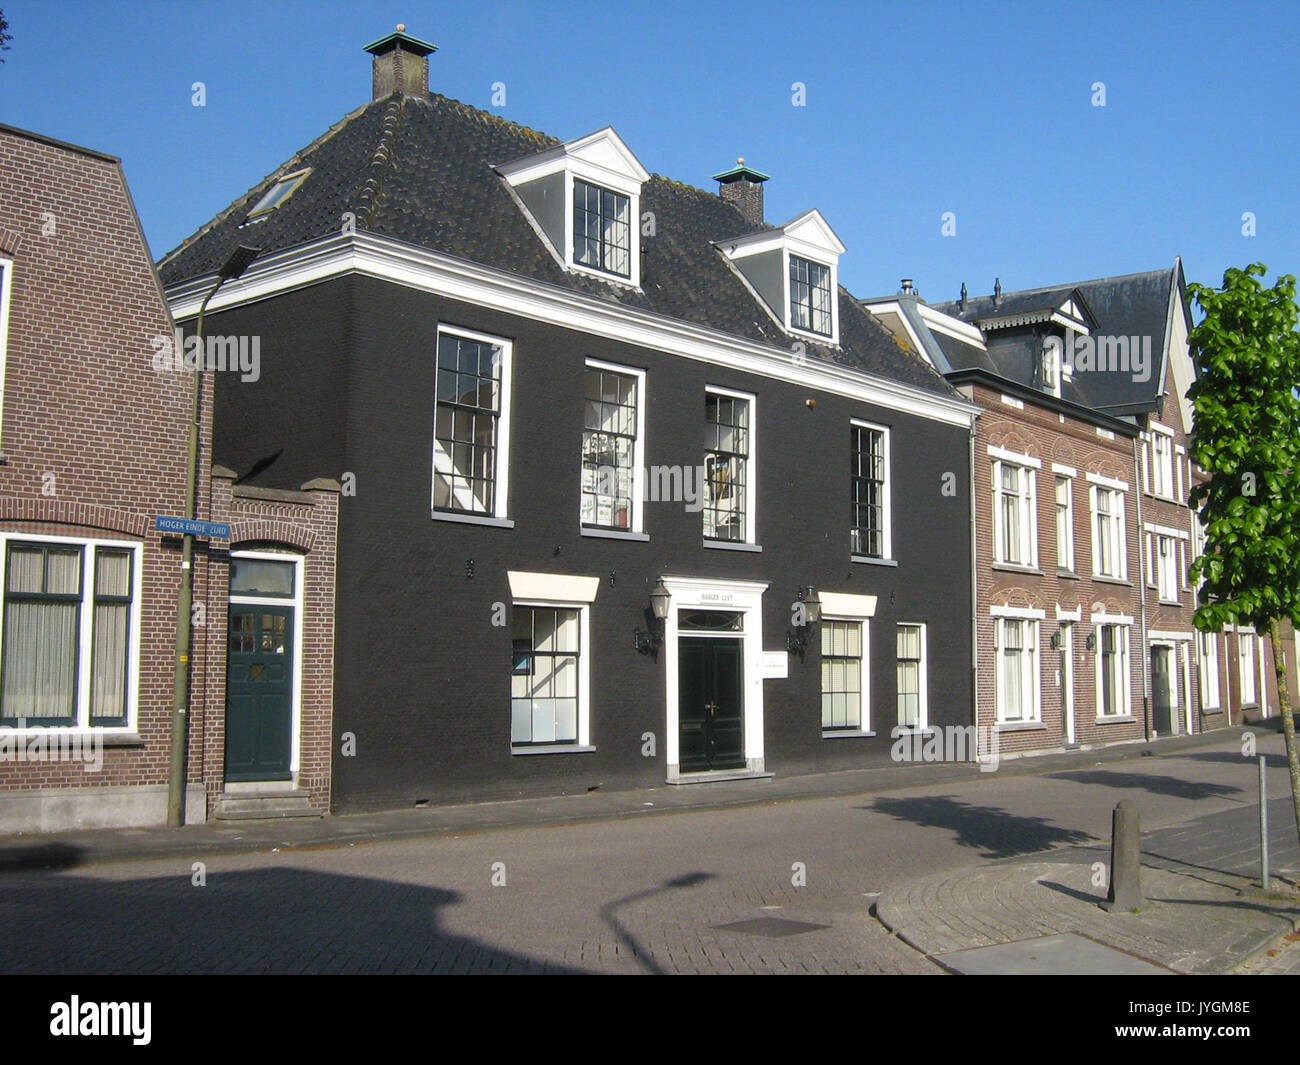 6 Hoger Einde Zuid Ouderkerk aan de Amstel Netherlands Stock Photo